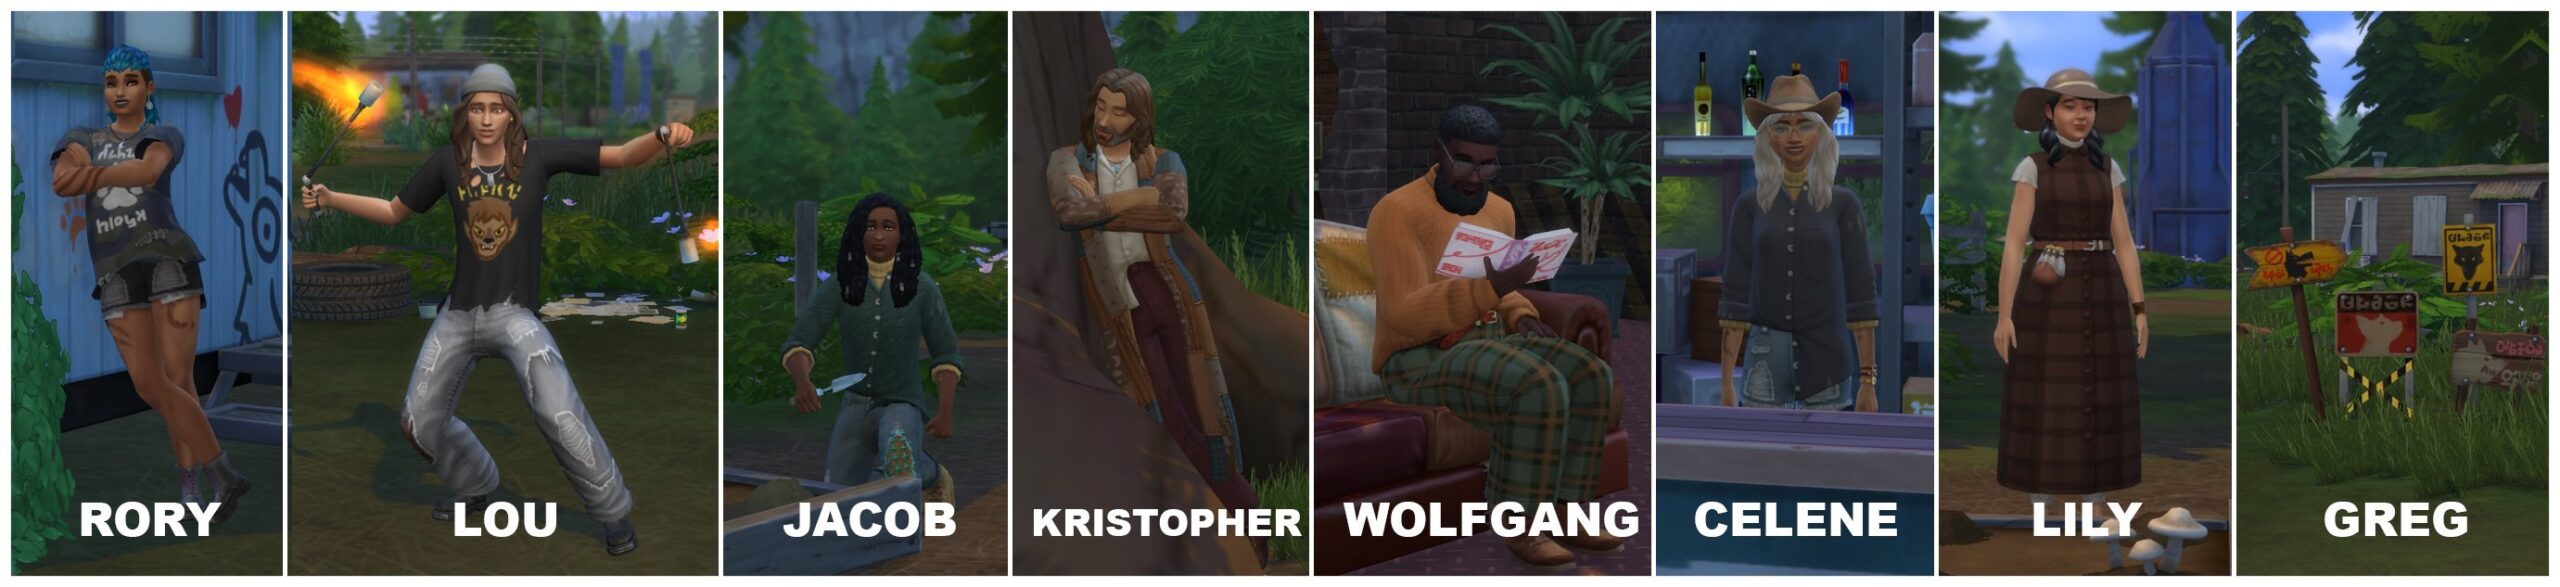 The Sims 4 LobiSims: Várias Imagens e Vídeos Aleatórios do Pacote